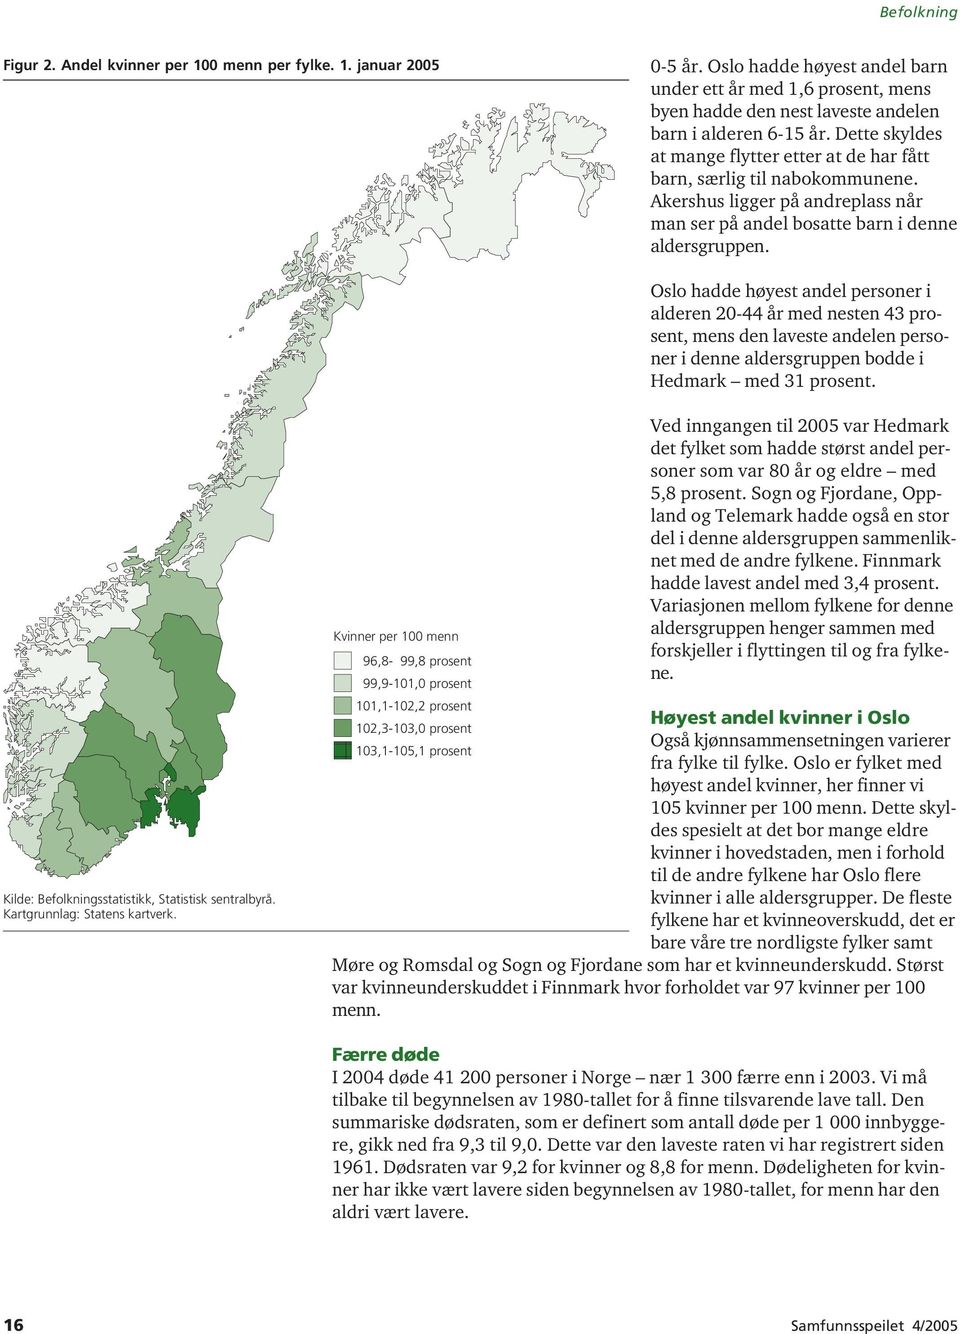 Oslo hadde høyest andel personer i alderen 20-44 år med nesten 43 prosent, mens den laveste andelen personer i denne aldersgruppen bodde i Hedmark med 31 prosent.